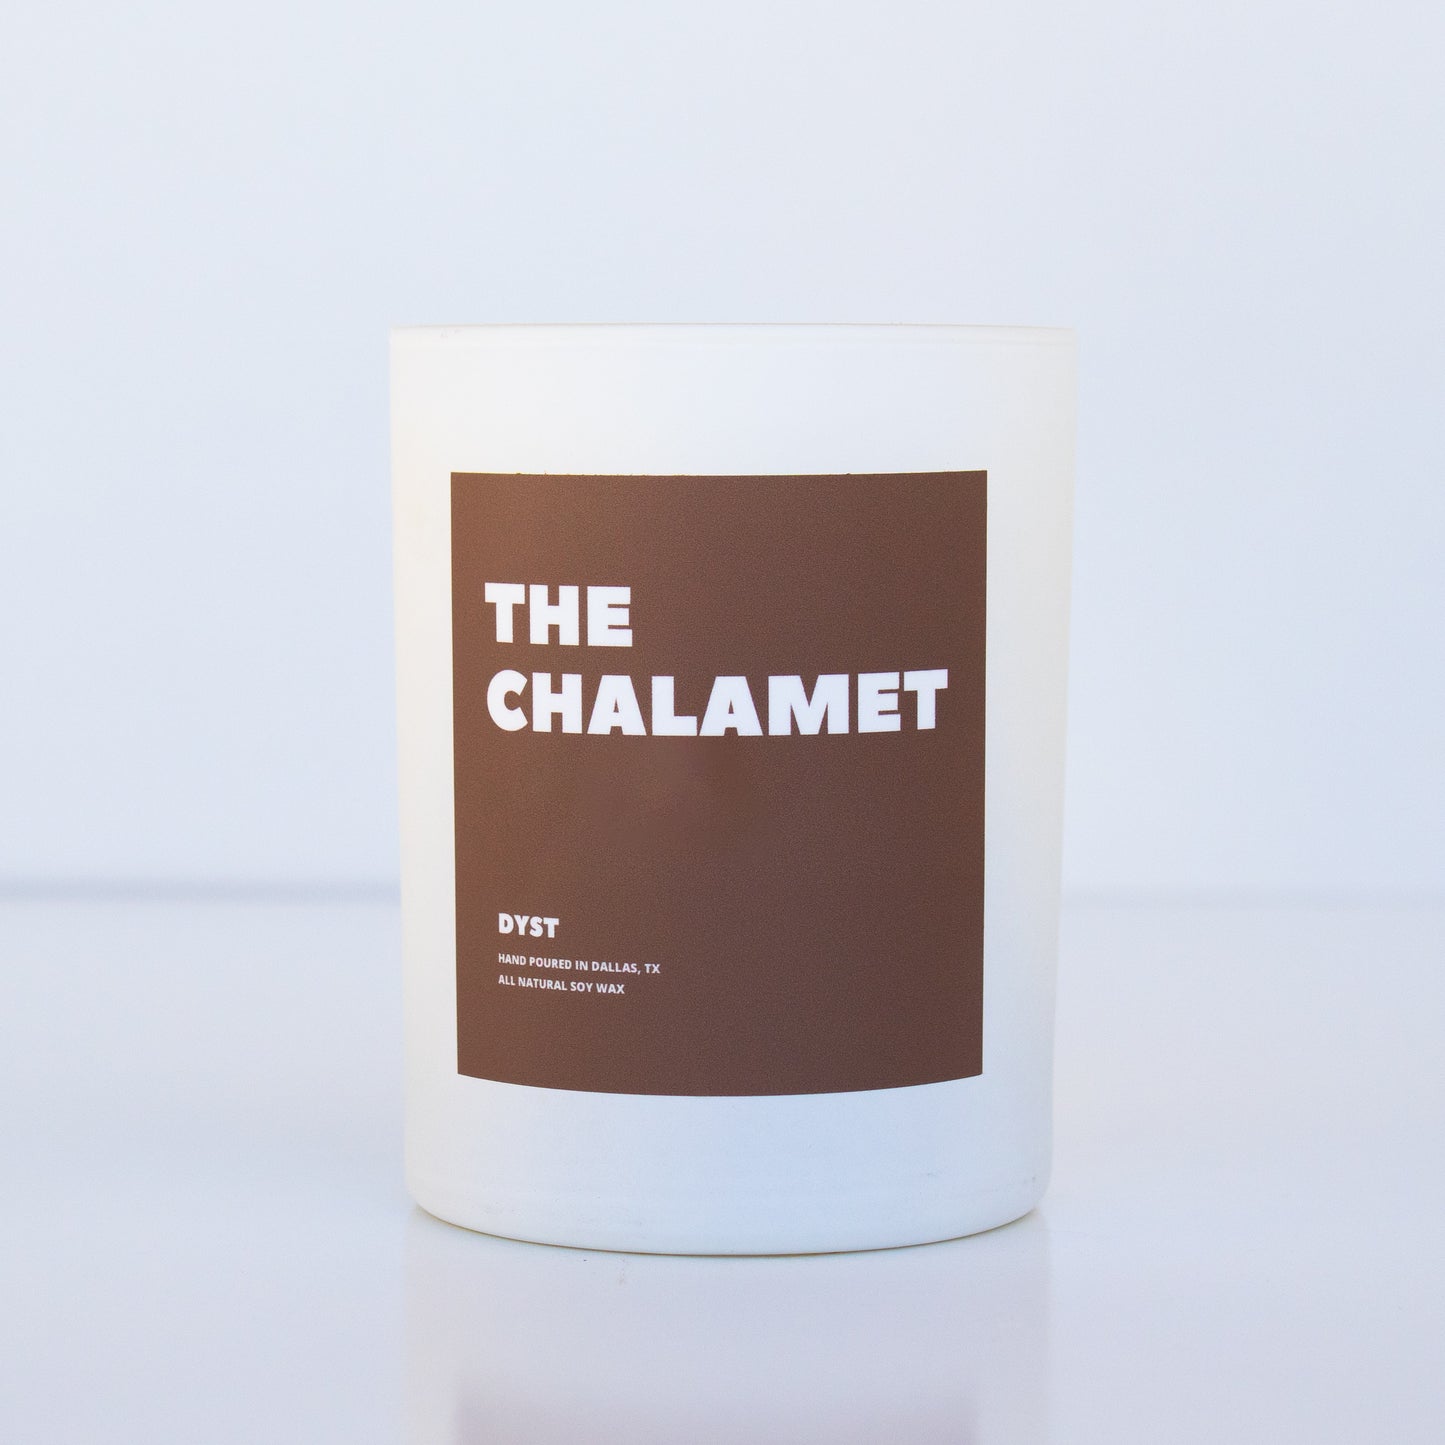 The Chalamet